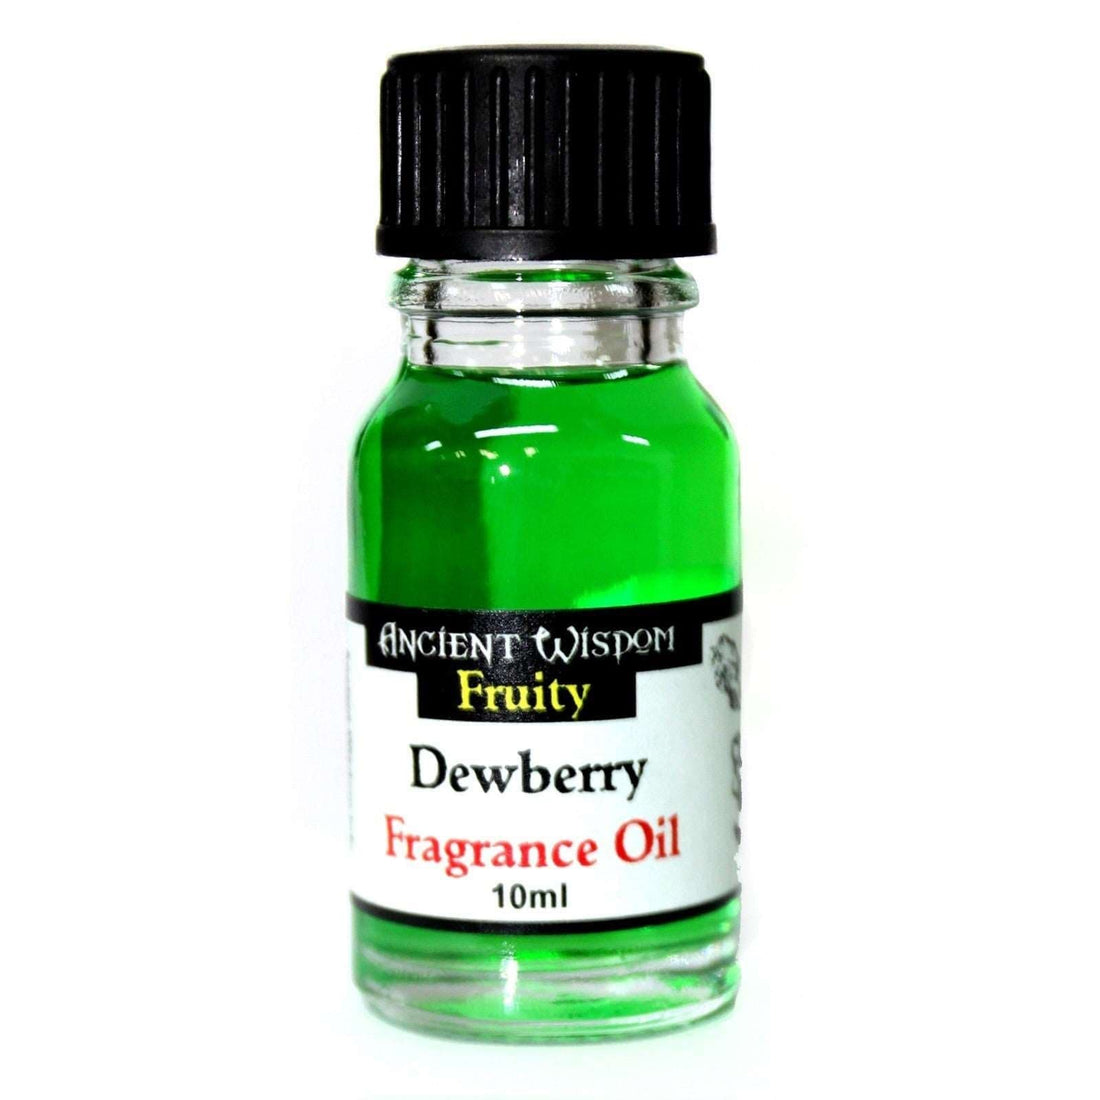 10ml Dewberry Fragrance Oil - best price from Maltashopper.com AWFO-20